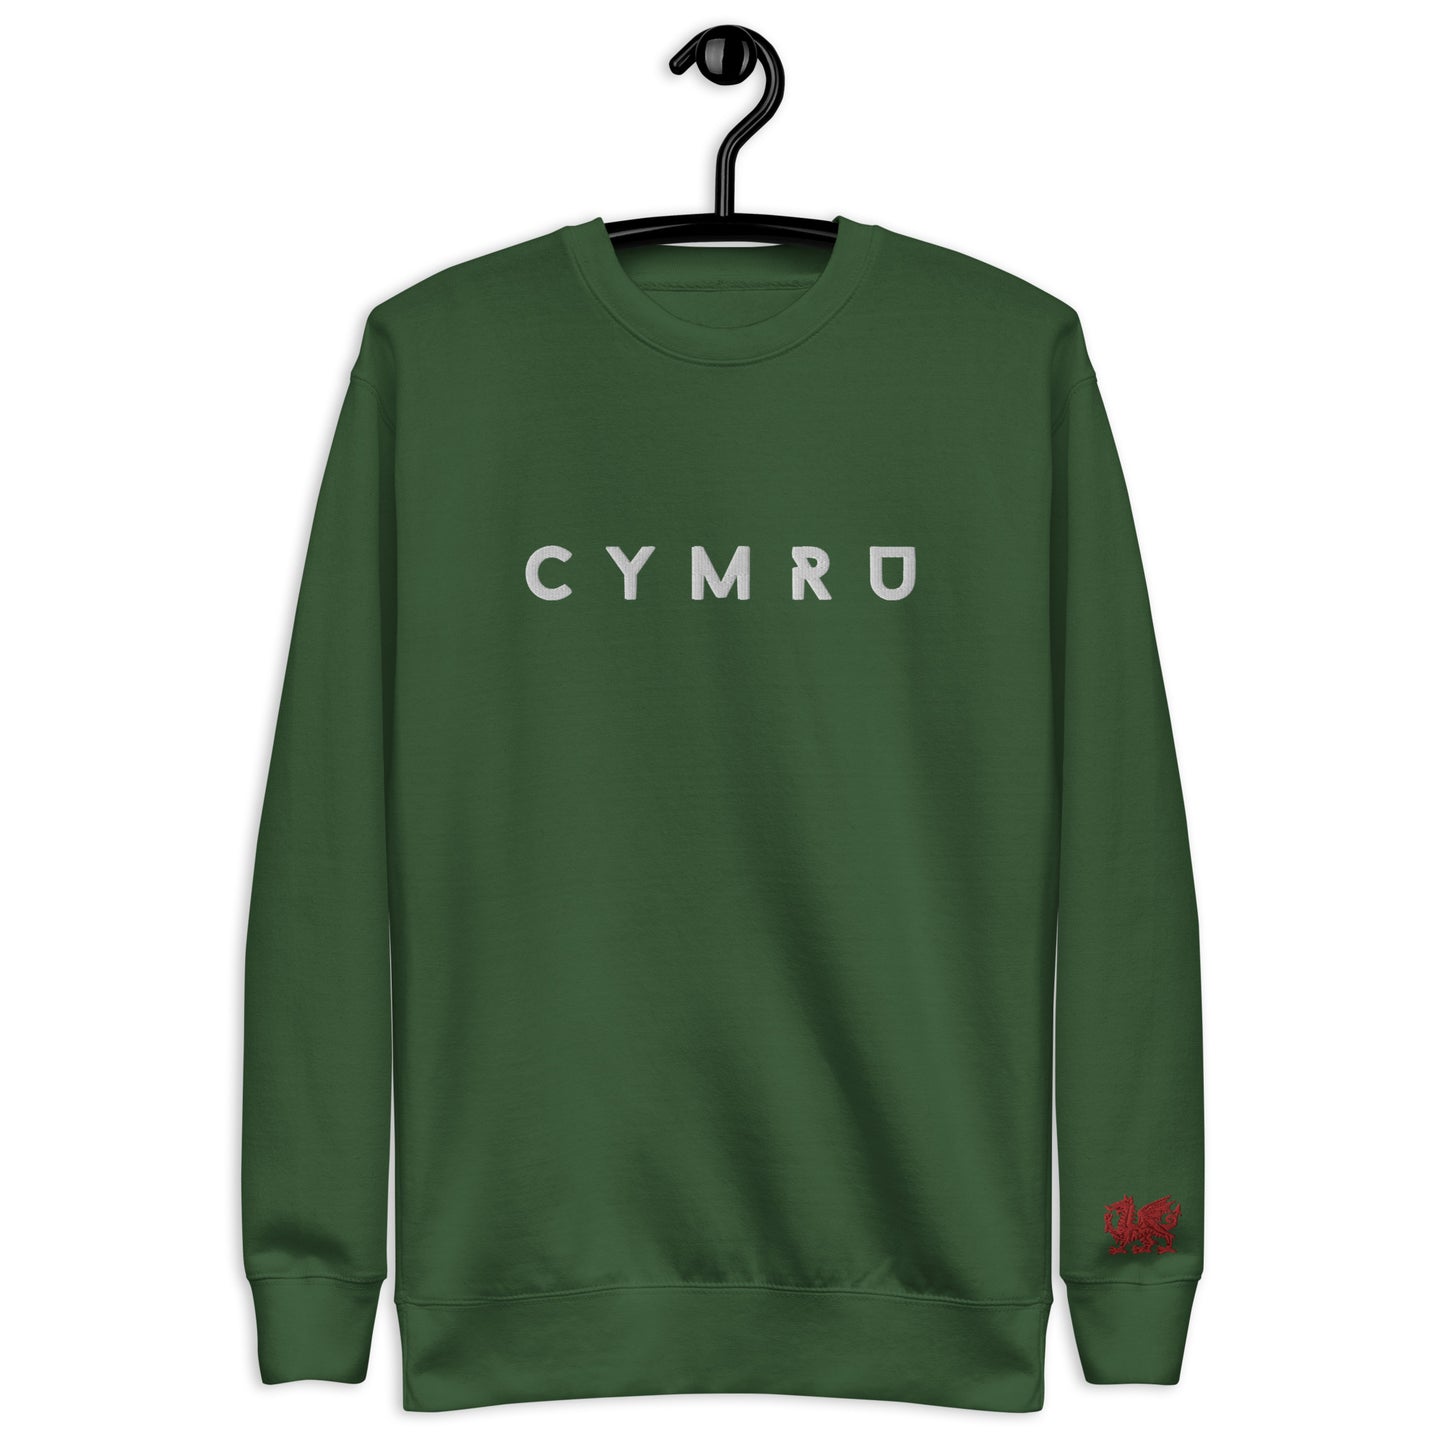 Cymru - Unisex Premium Sweatshirt